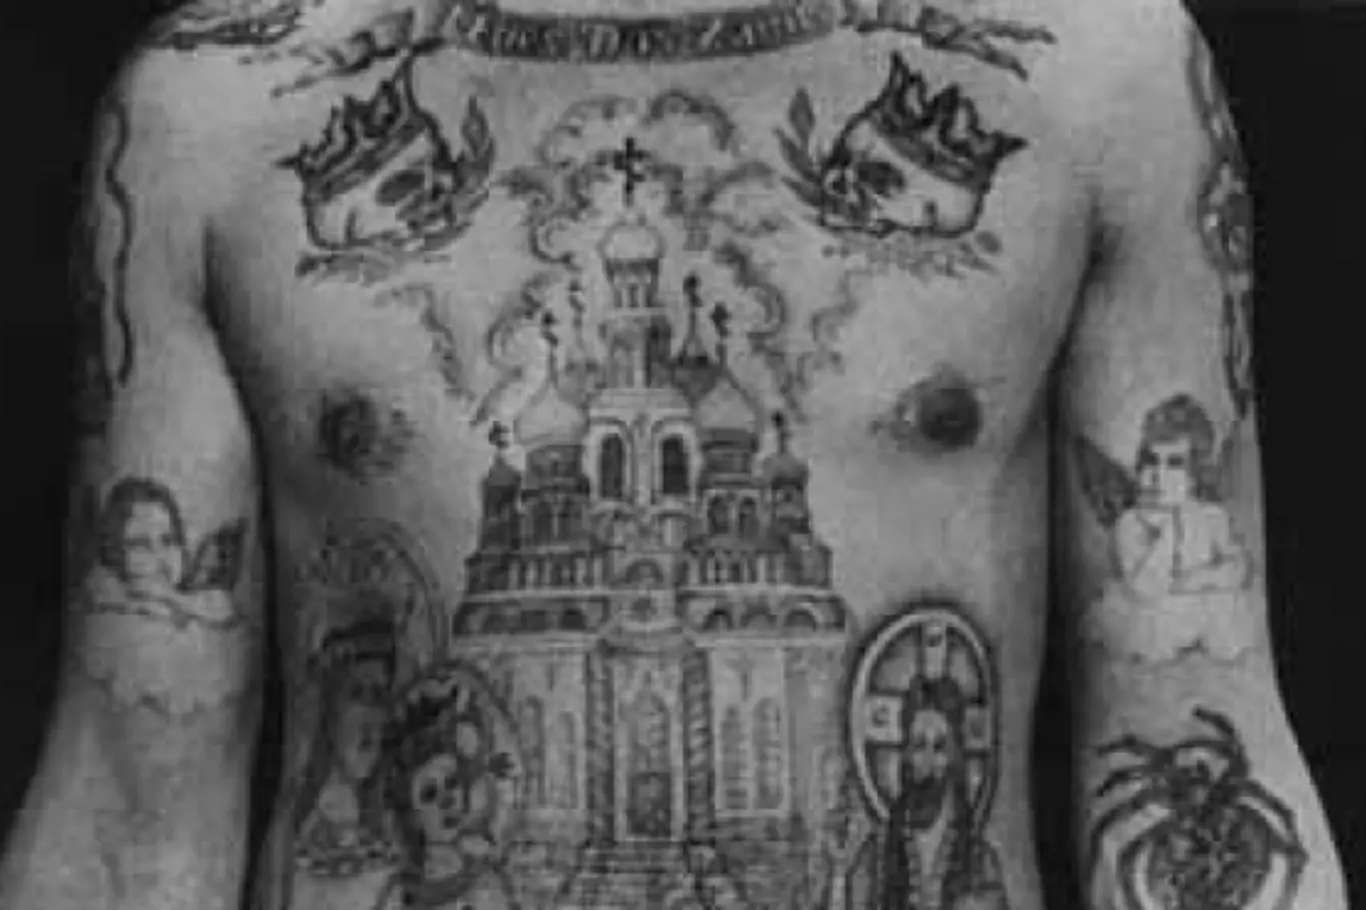 Z tetování ruských kriminálníků vyčtete vše: vraha, zloděje i pedofila